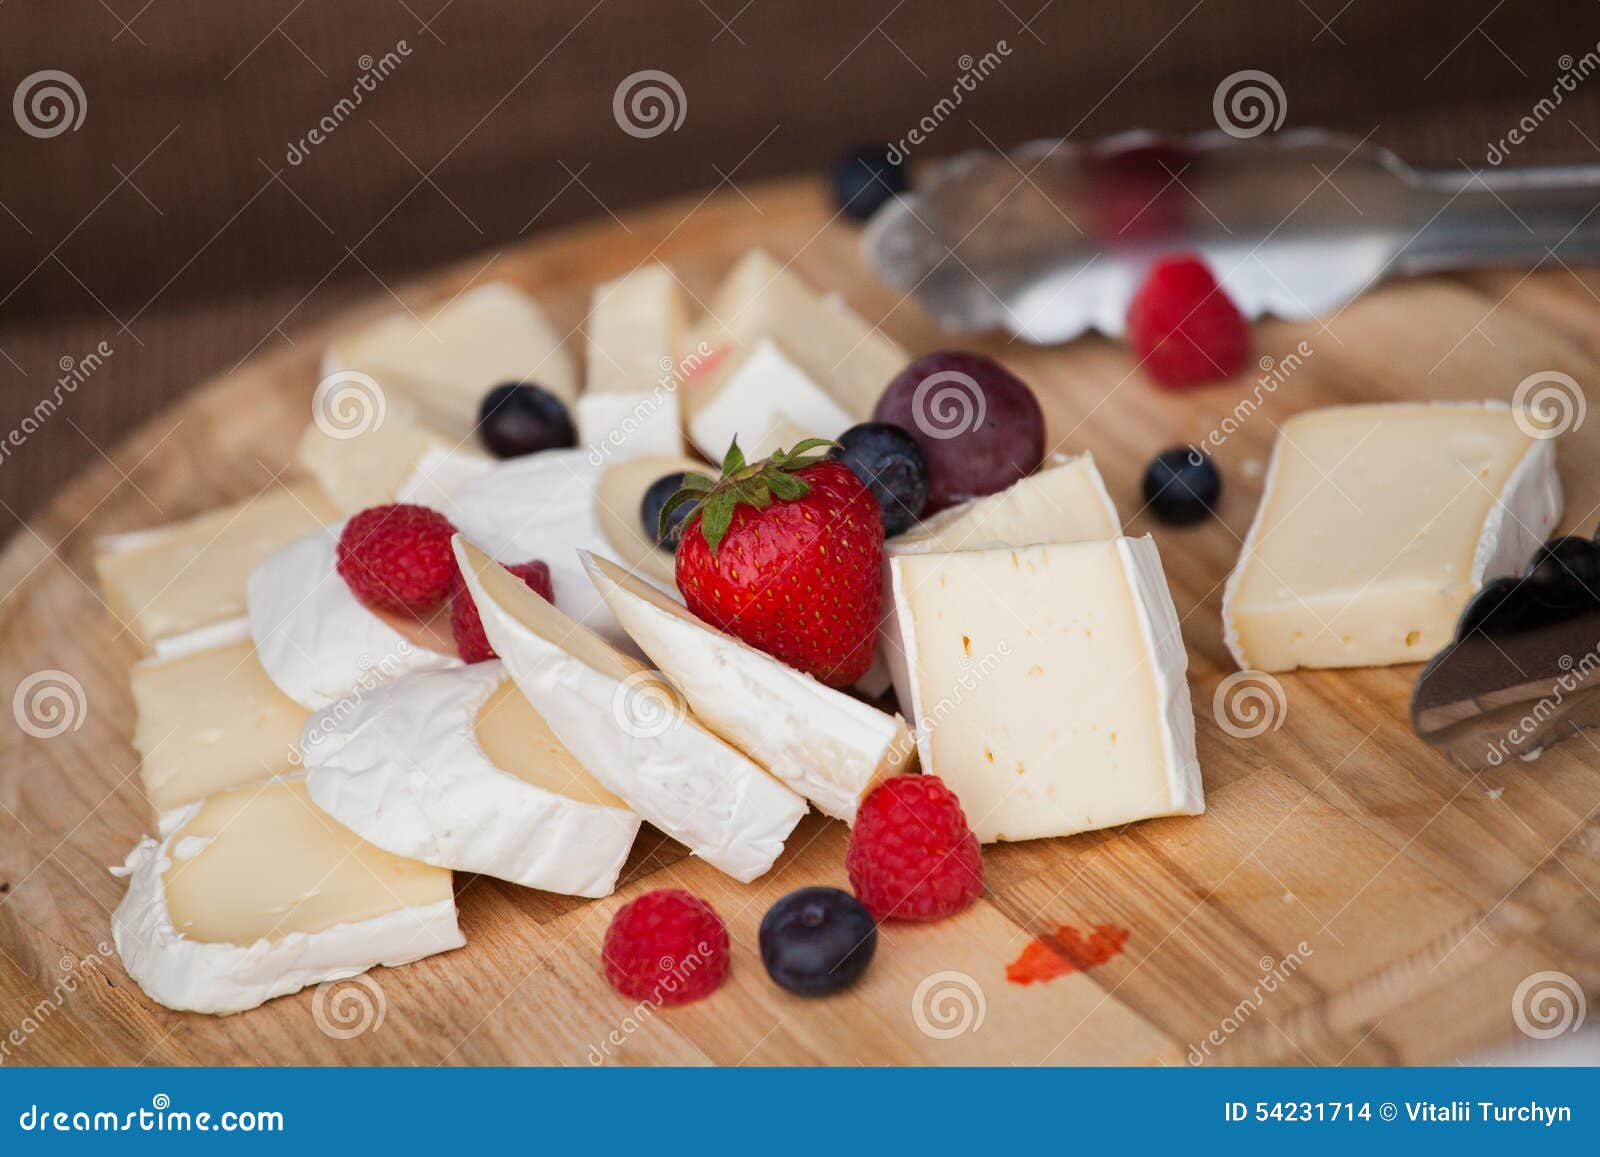 buffet cheese board